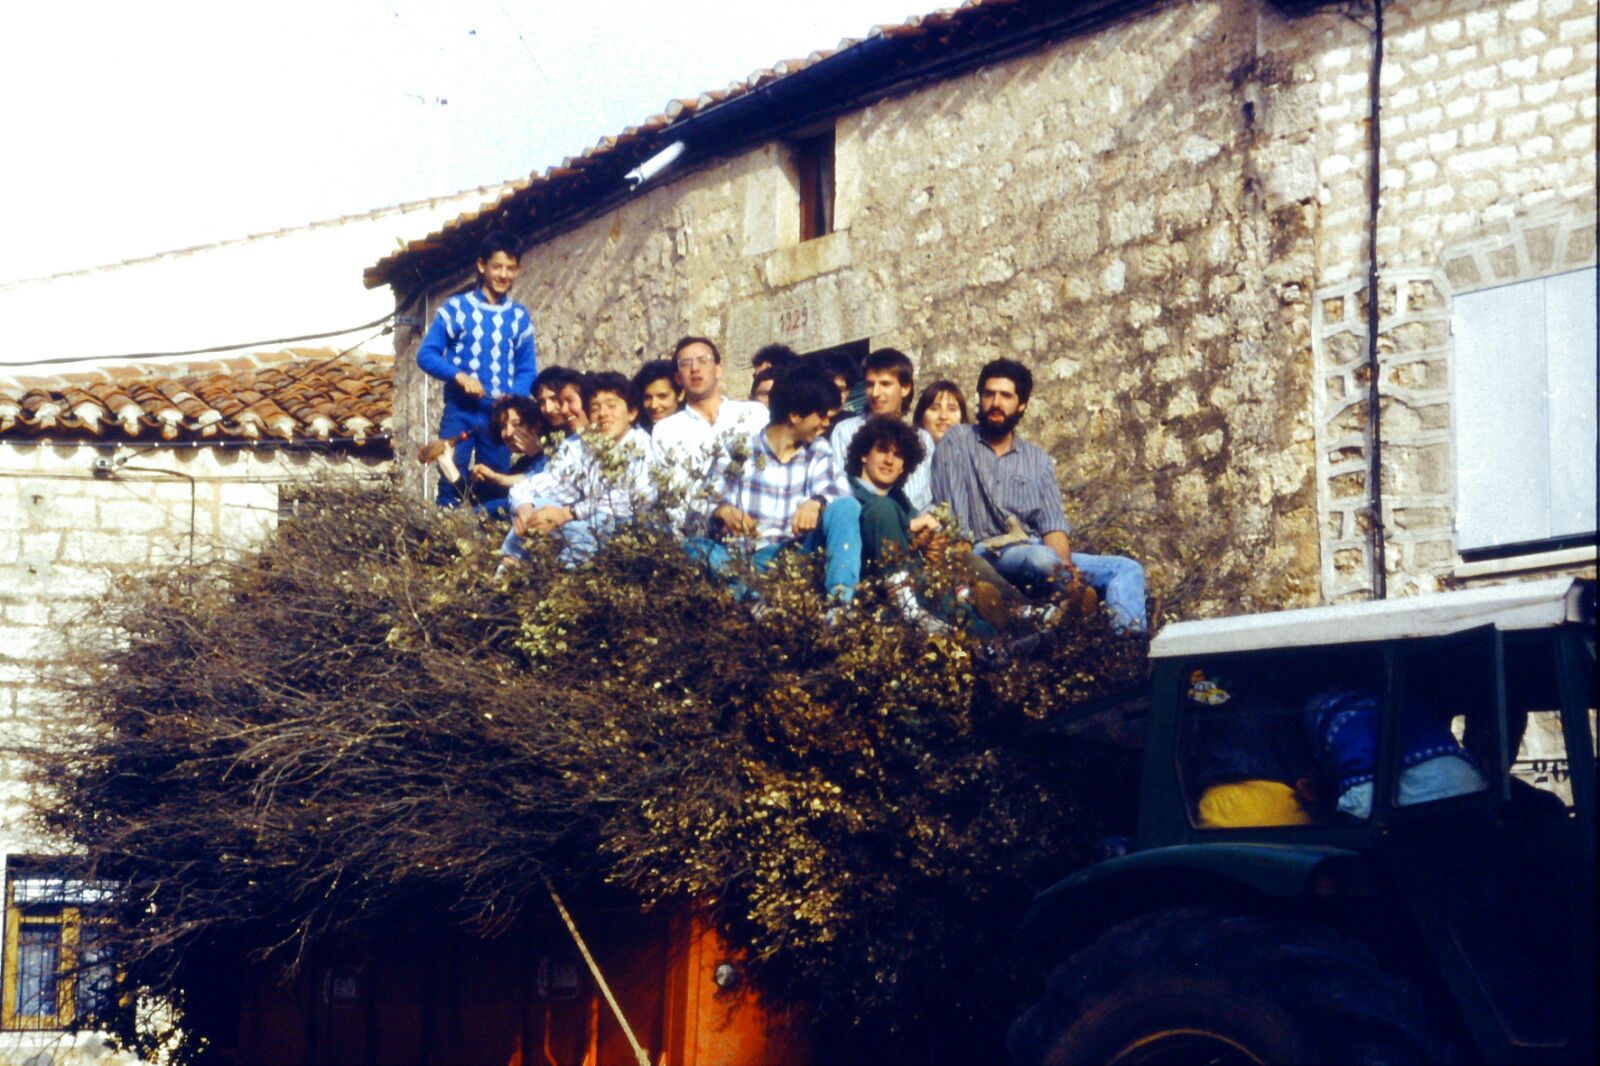 Mecerreyes, recogida de támbaras, año 1986. Foto Fernando Alonso, 2